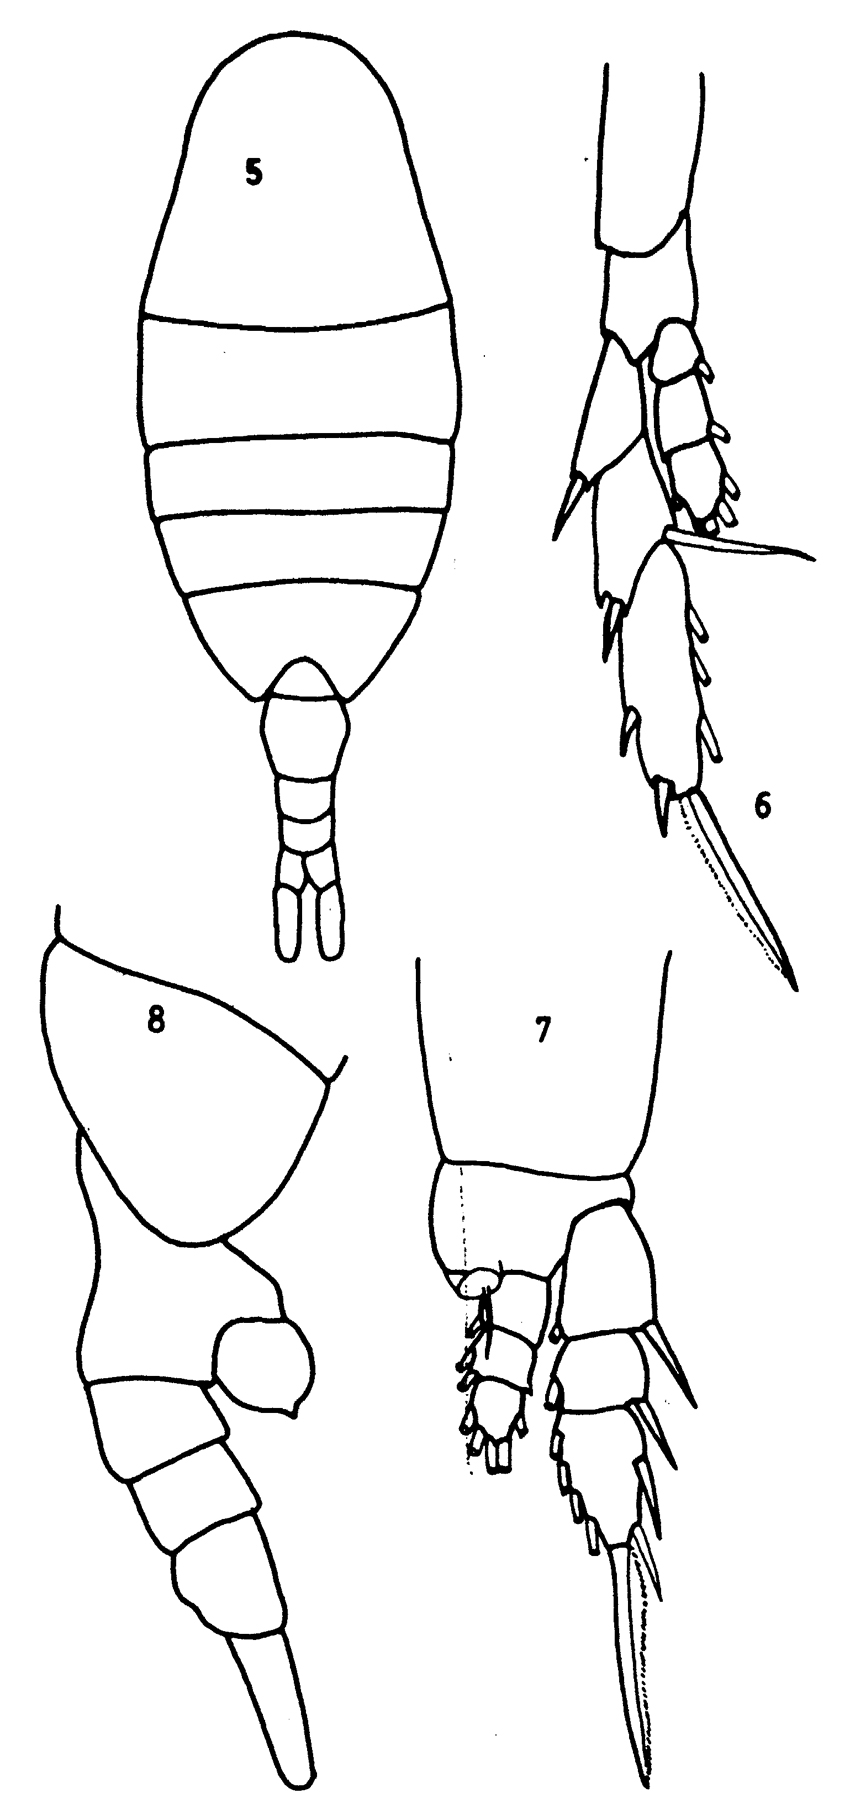 Species Lucicutia curta - Plate 12 of morphological figures